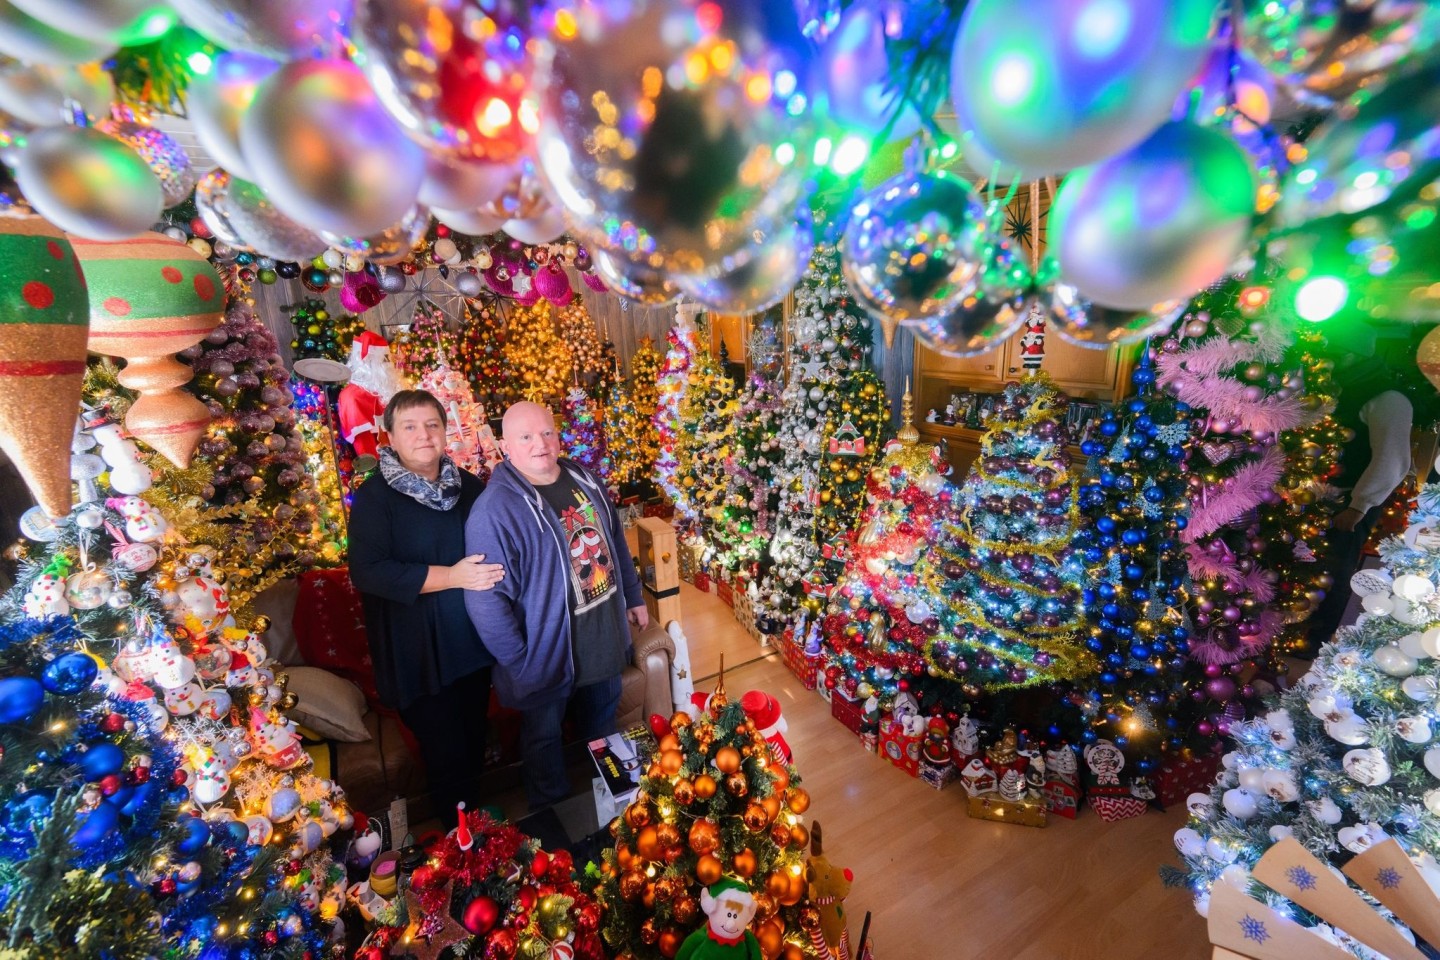 Mehr Weihnachten geht kaum: Susanne und Thomas Jeromin stehen inmitten von Weihnachtsbäumen im Wohnzimmer ihres Hauses.